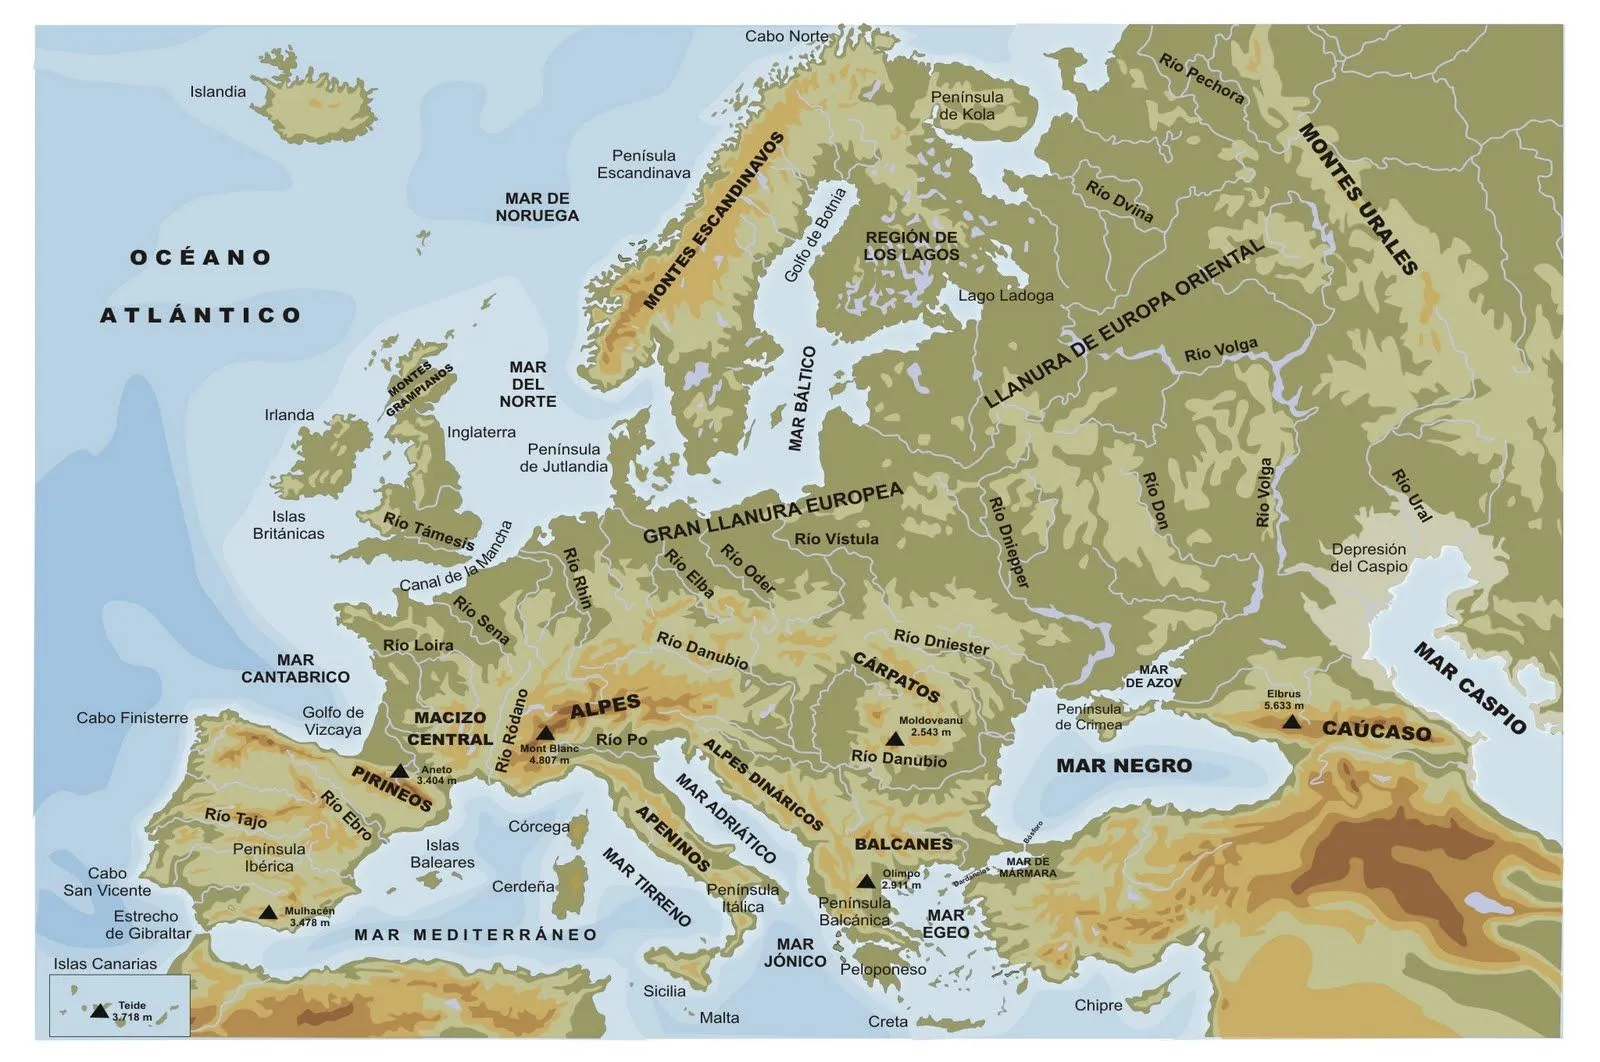 BLOG DE HISTORIA DE DIEGO: Mapas político y fisico de Europa